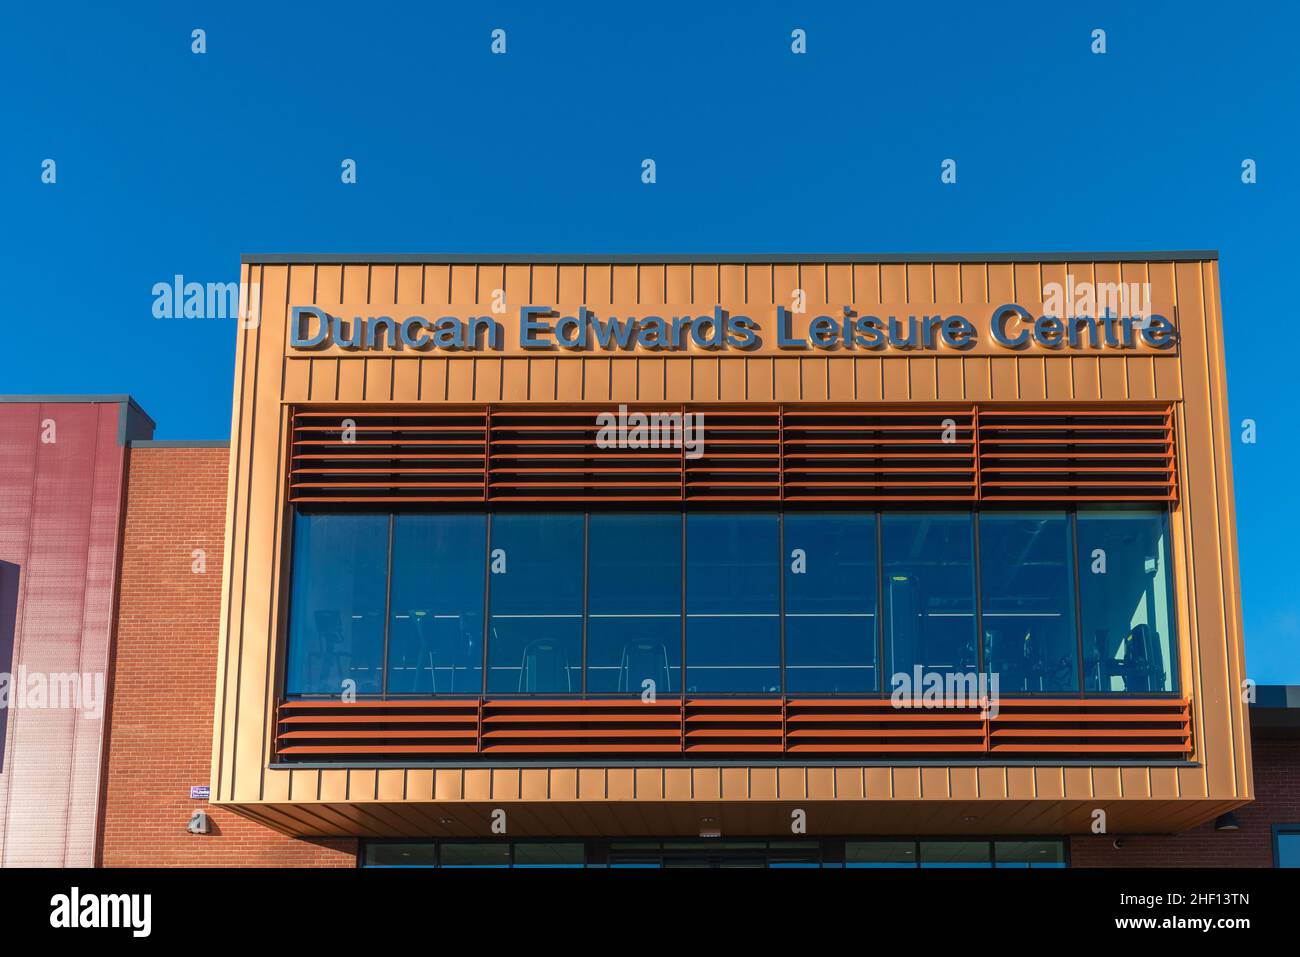 Le nouveau centre de loisirs Duncan Edwards de Dudley, West Midlands, a ouvert ses portes le 24 janvier 2022 Banque D'Images